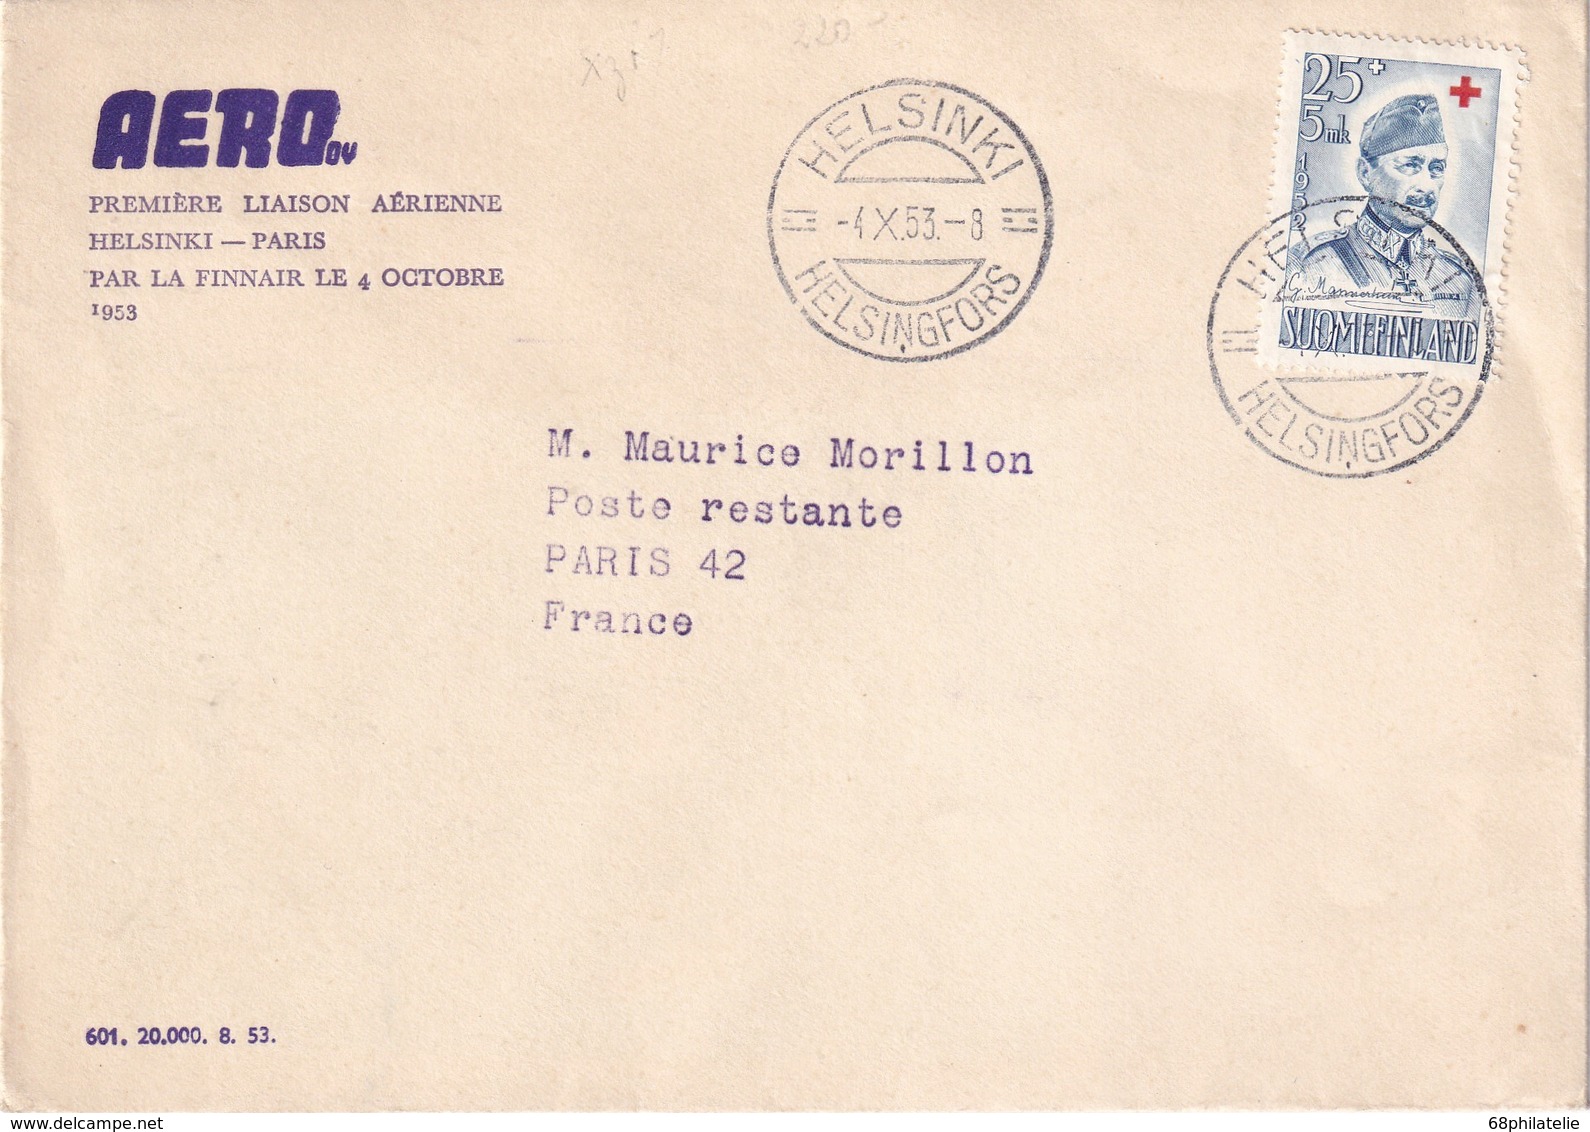 FINLANDE 1953 PLI AERIEN DE HELSINKI POUR PARIS  1ERE LIAISON AERIENNE - Covers & Documents